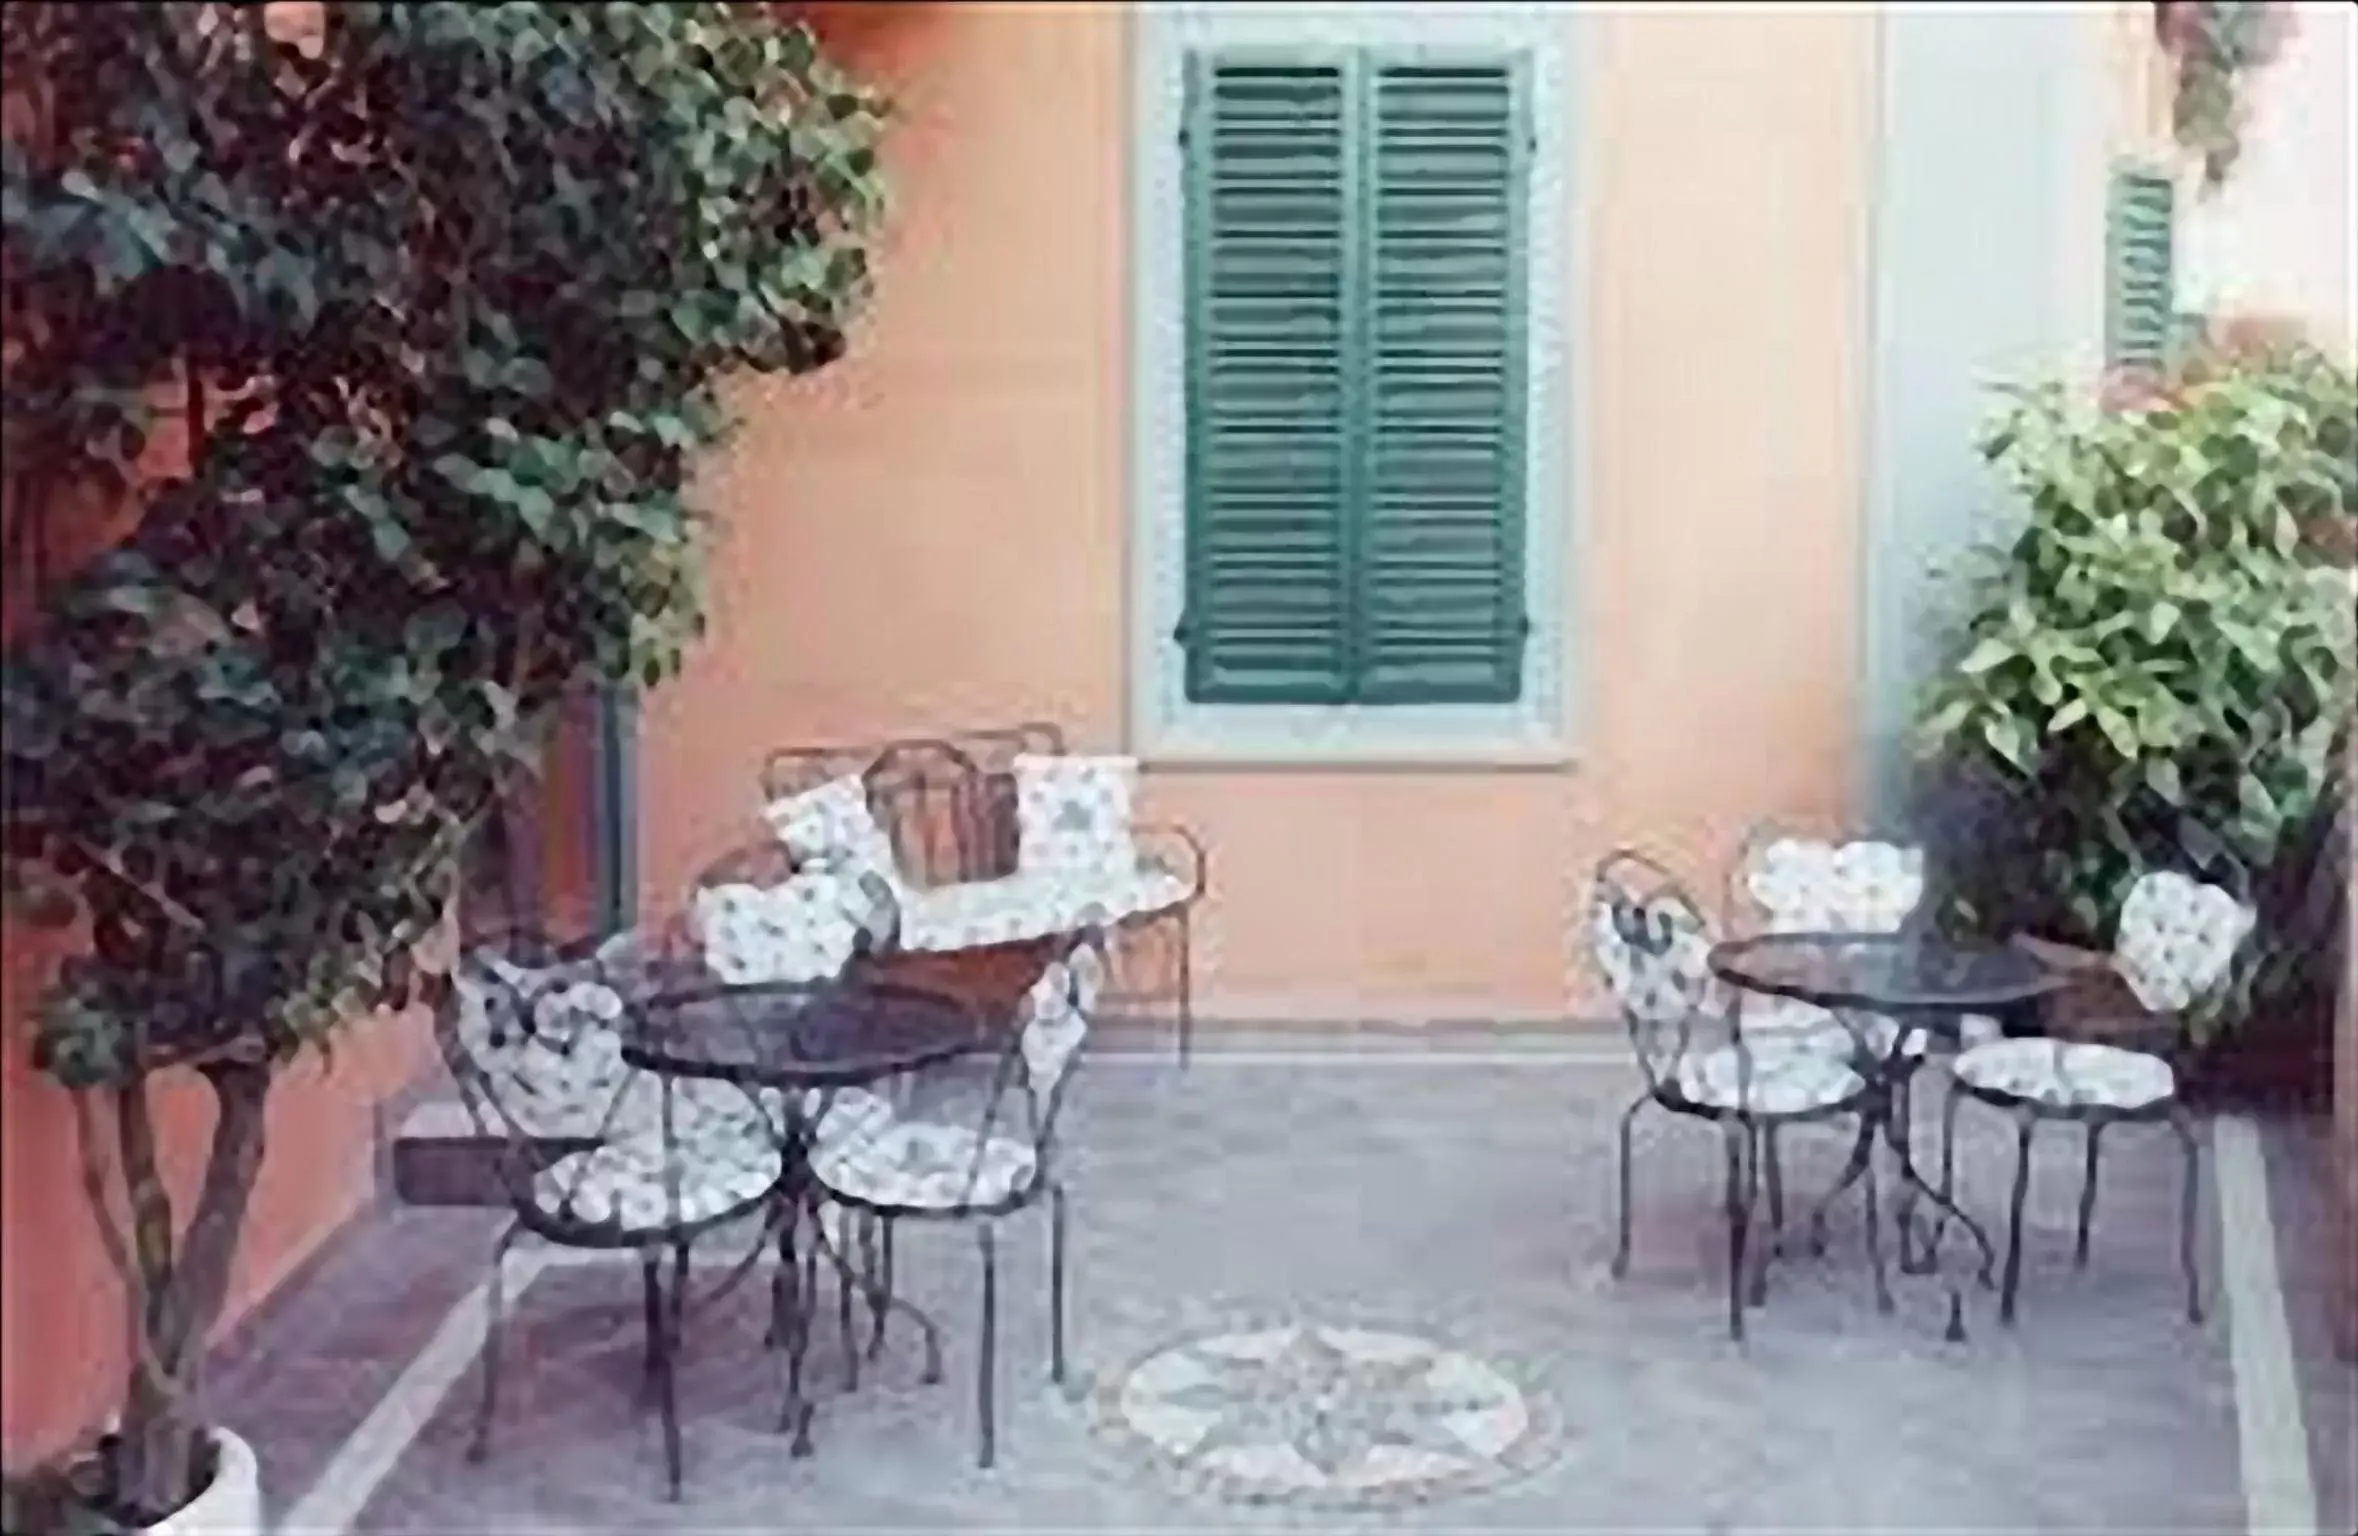 Decorative detail, Patio/Outdoor Area in Villa Piccola Siena